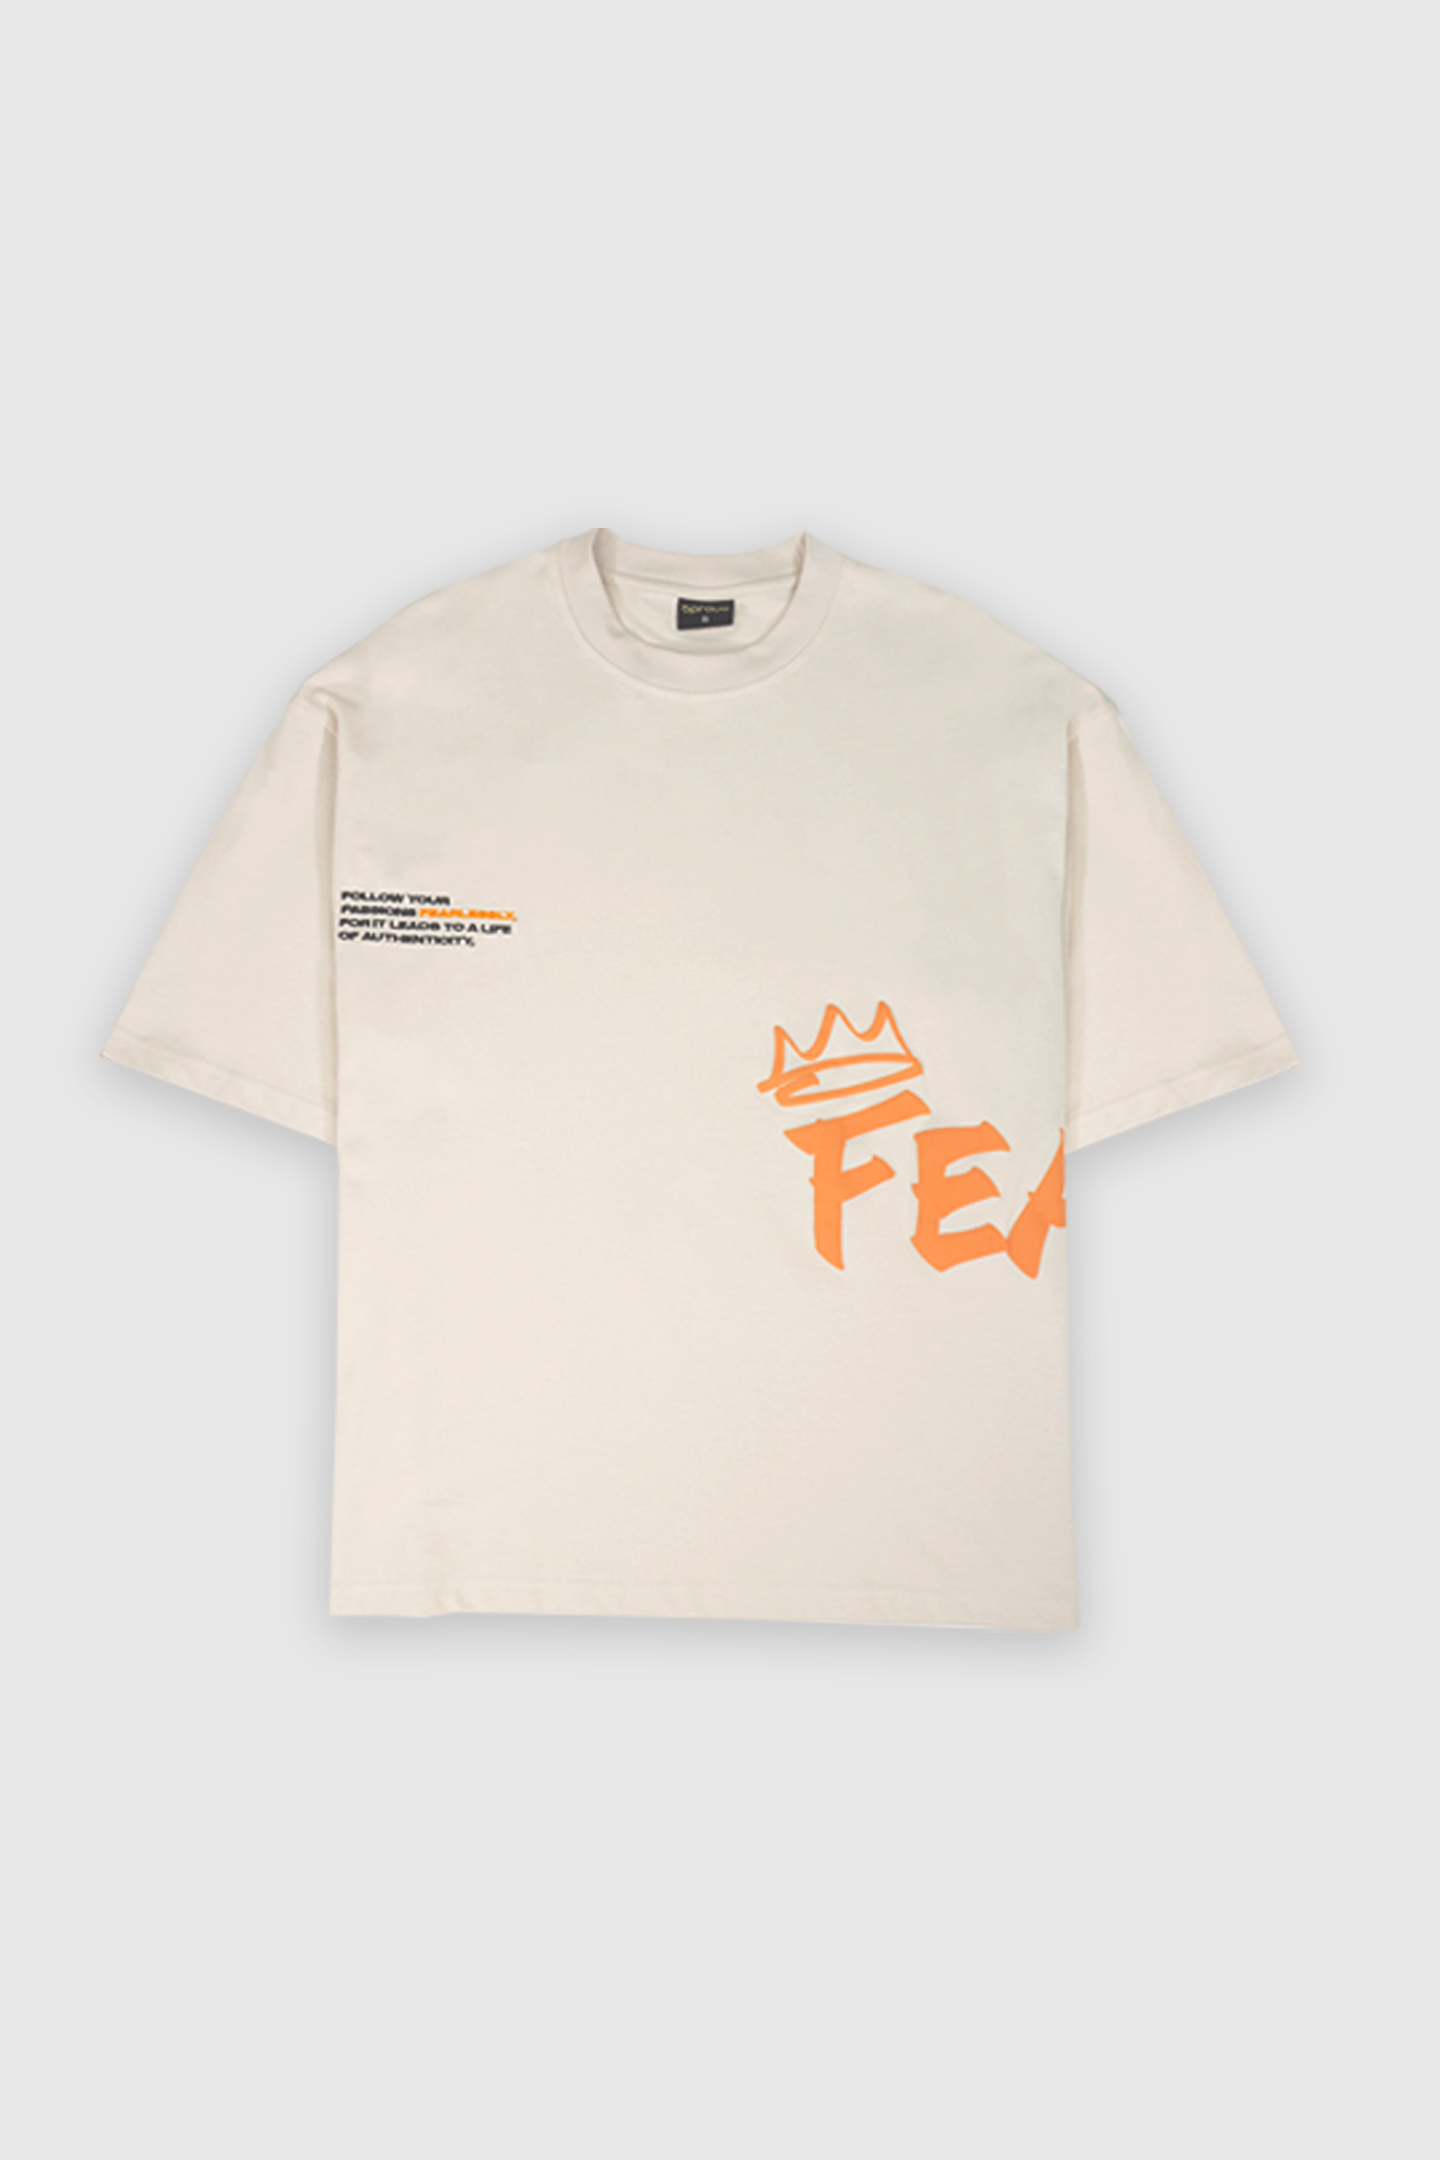 Bproud "Fearless" Box T-Shirt